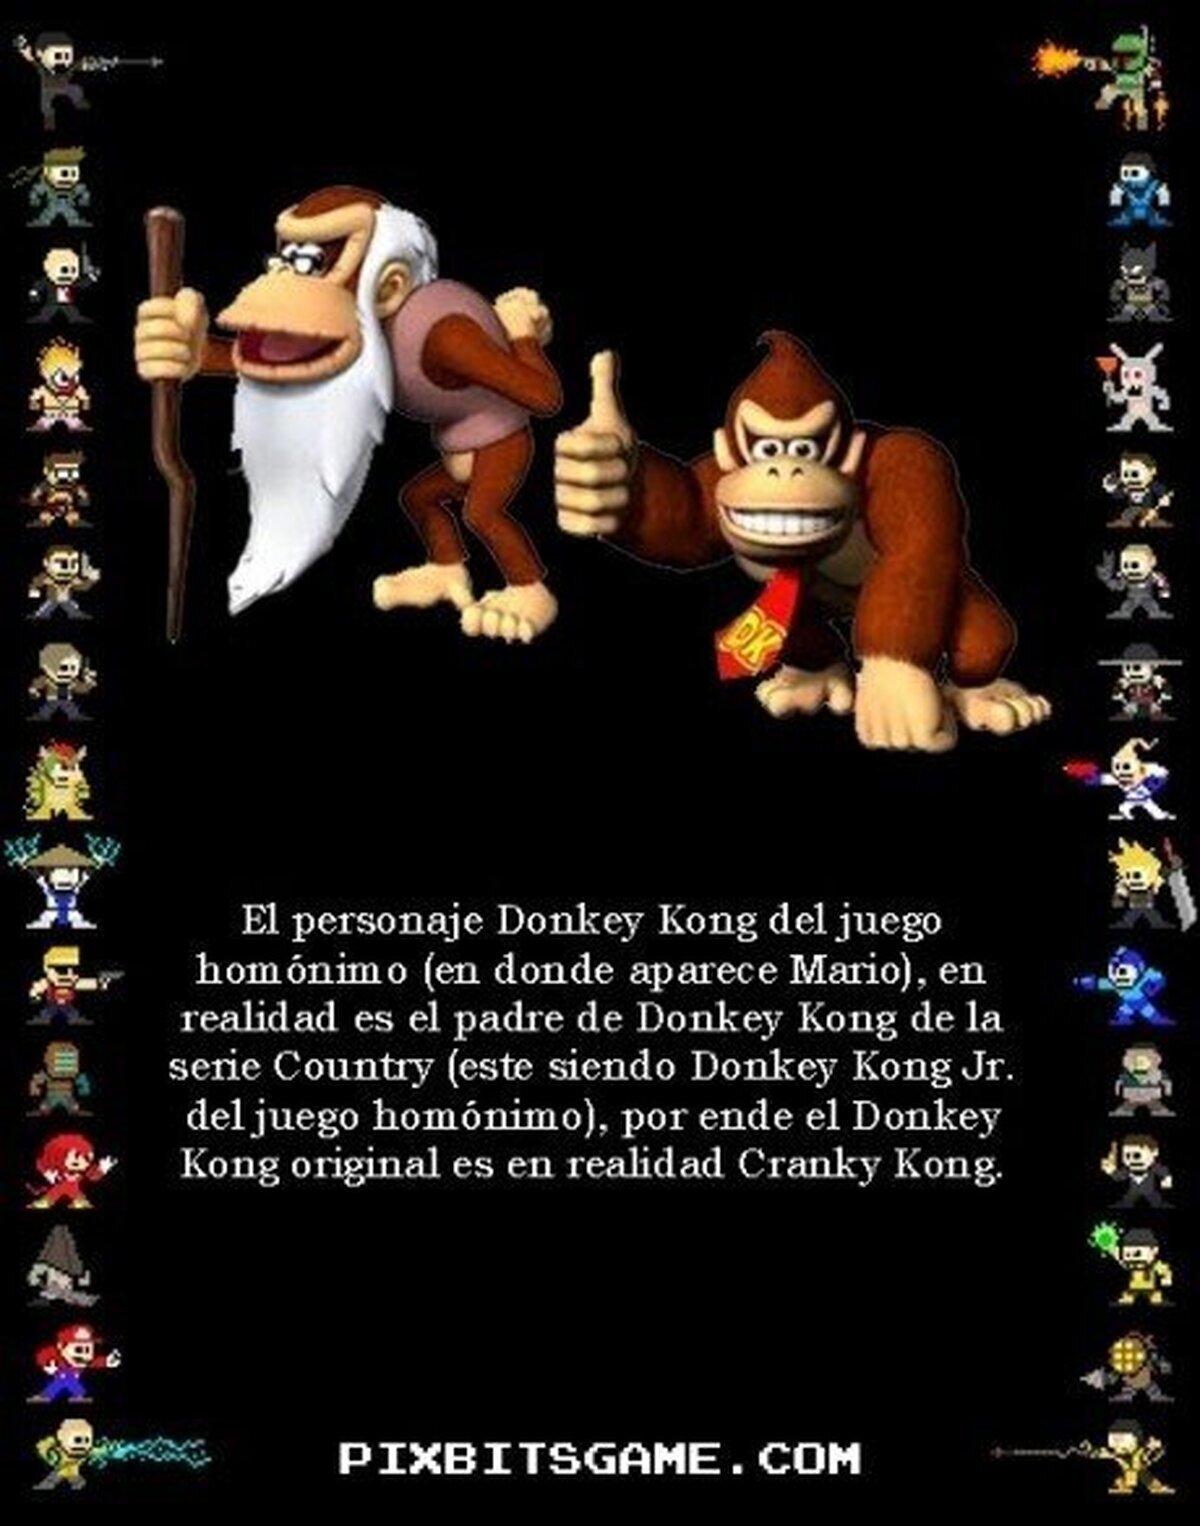 CRANKY KONG - El verdadero protagonista del Donkey Kong original